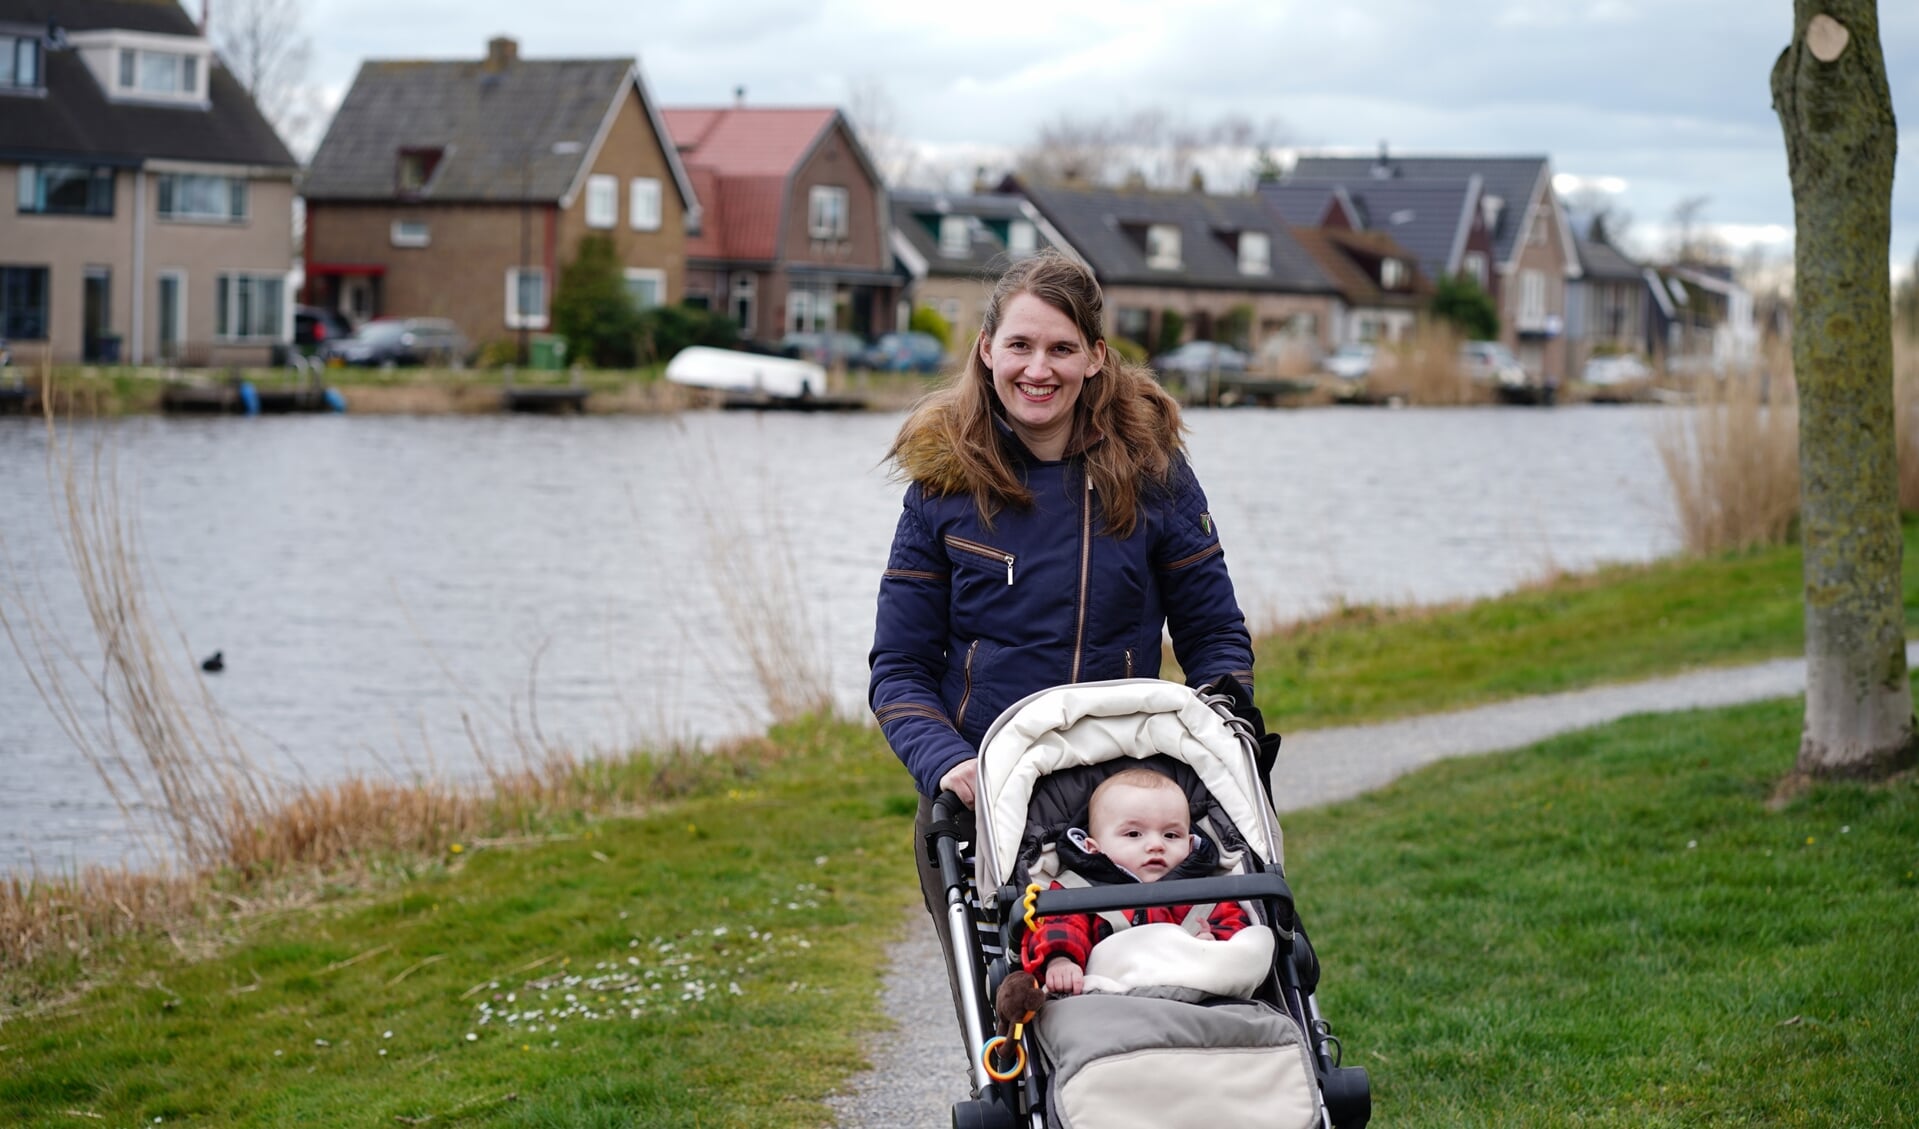 Eugenie en haar zoontje. Ze woont met haar gezin in Uithoorn. 